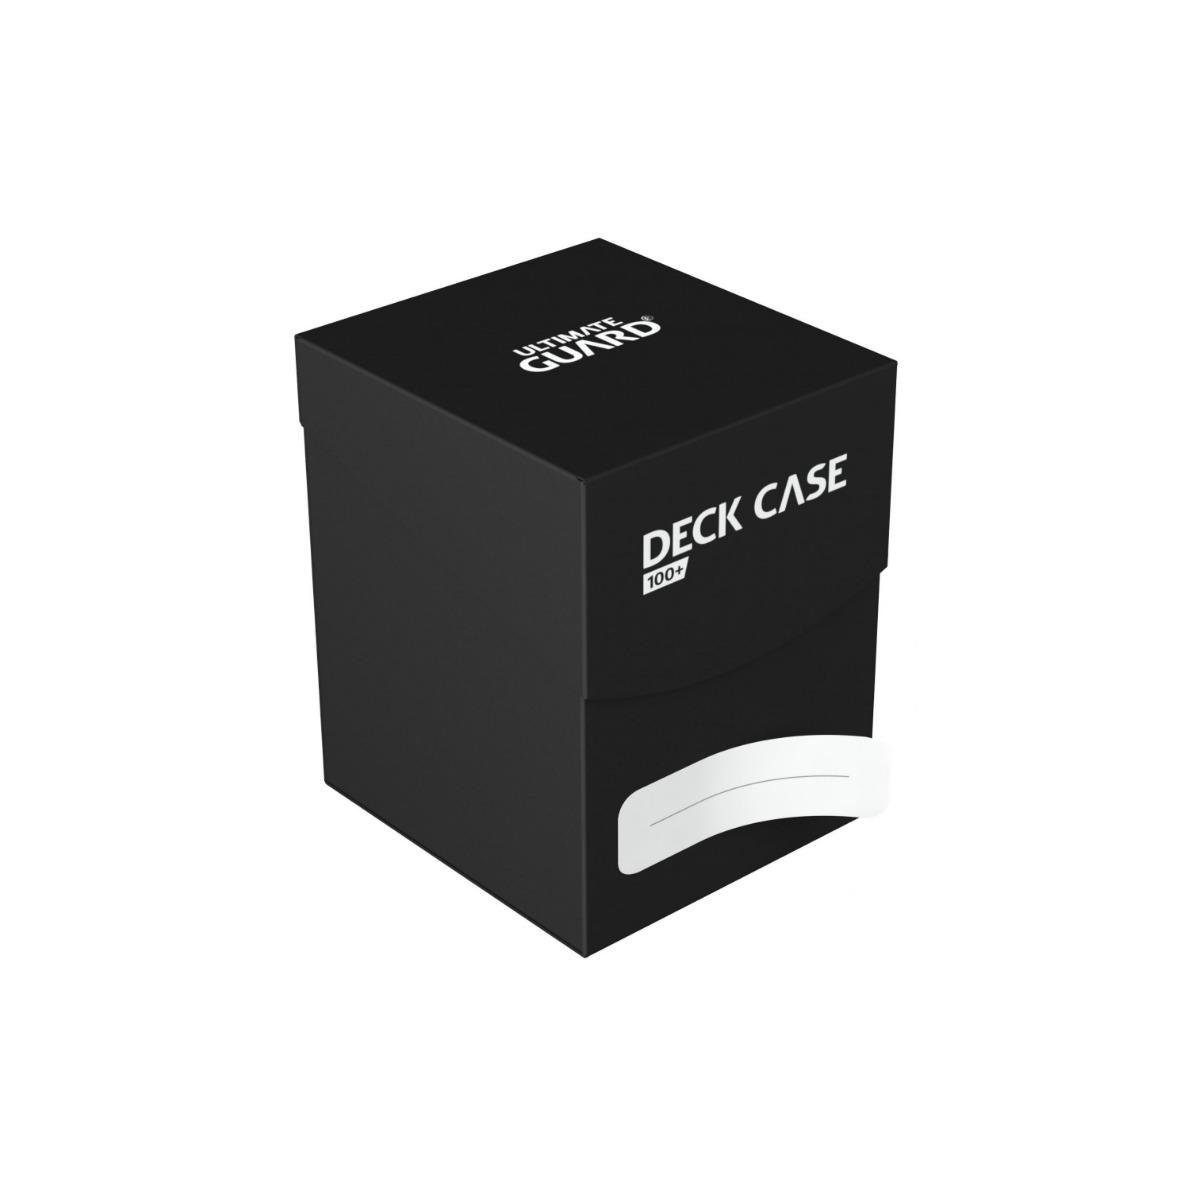 100+ Guard für Karten, Spiel, Ultimate Standardgröße, schwarz UGD010262 - Kartenbox -